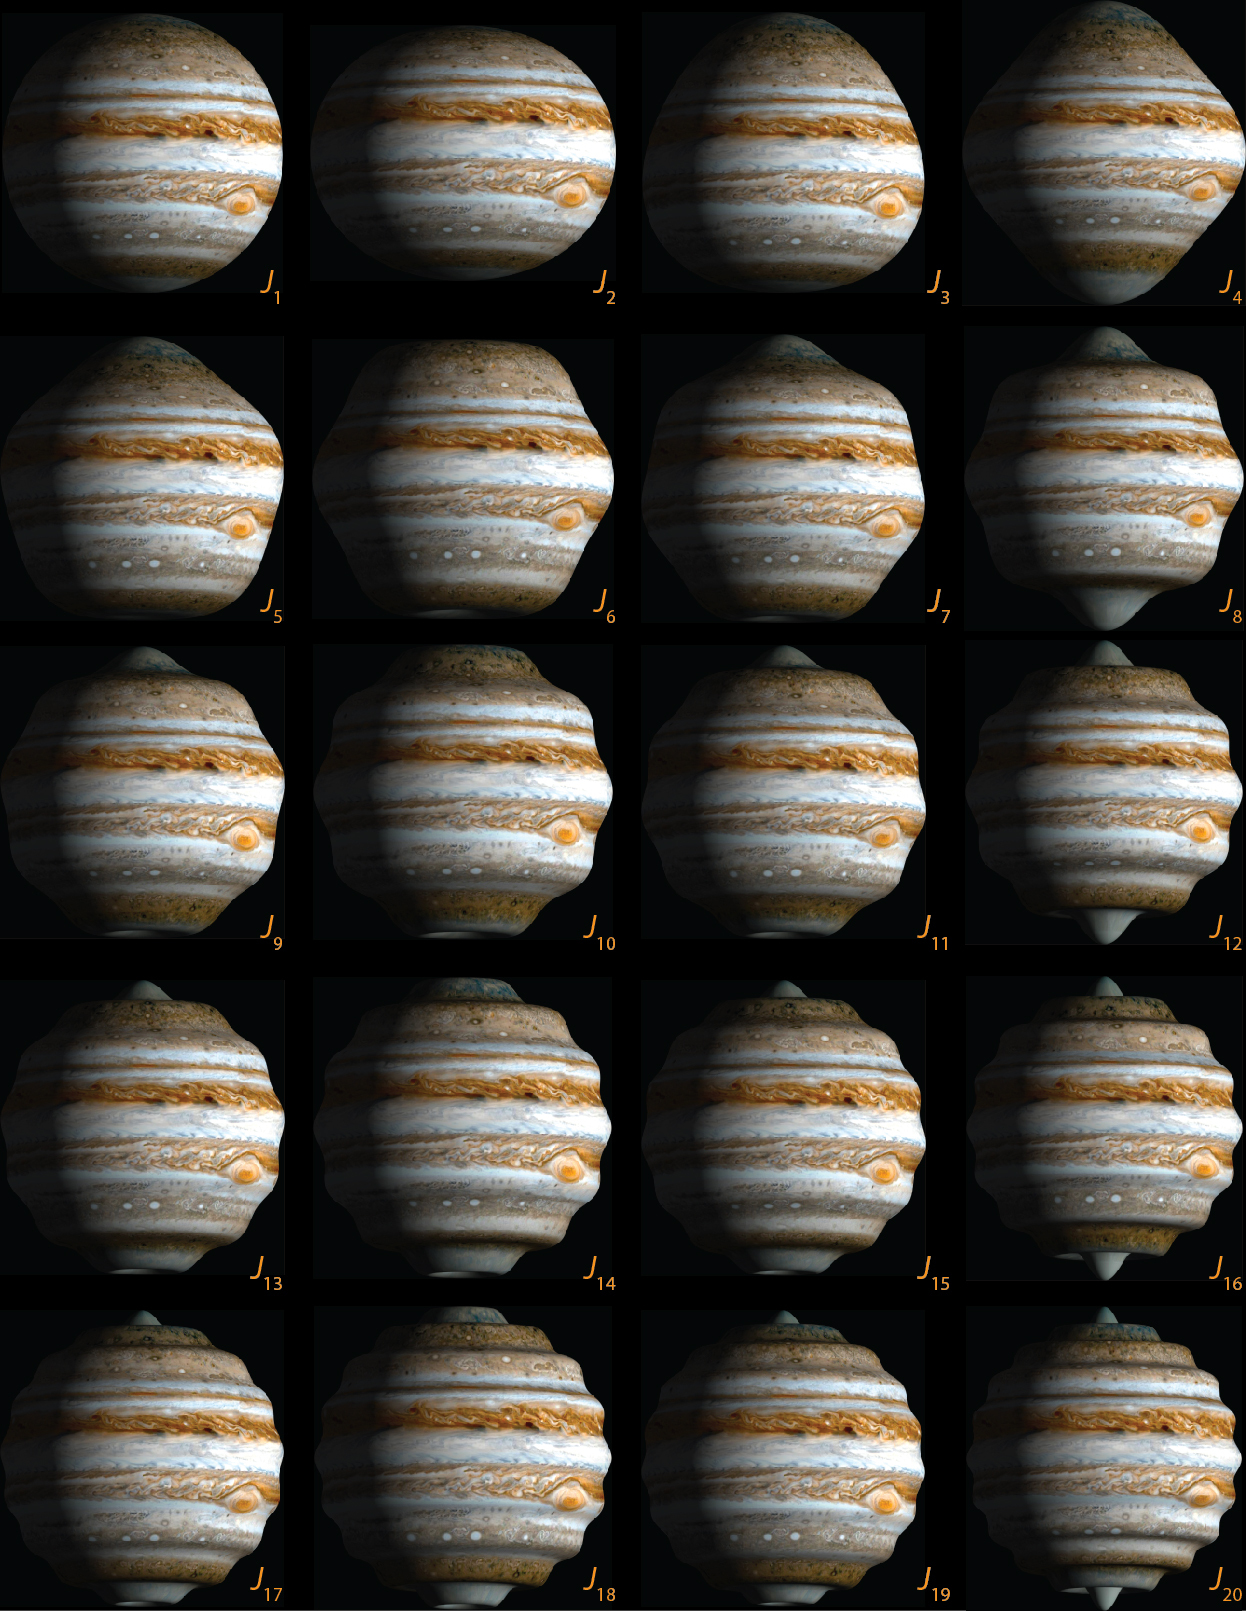 Jupiter Tide Chart 2016